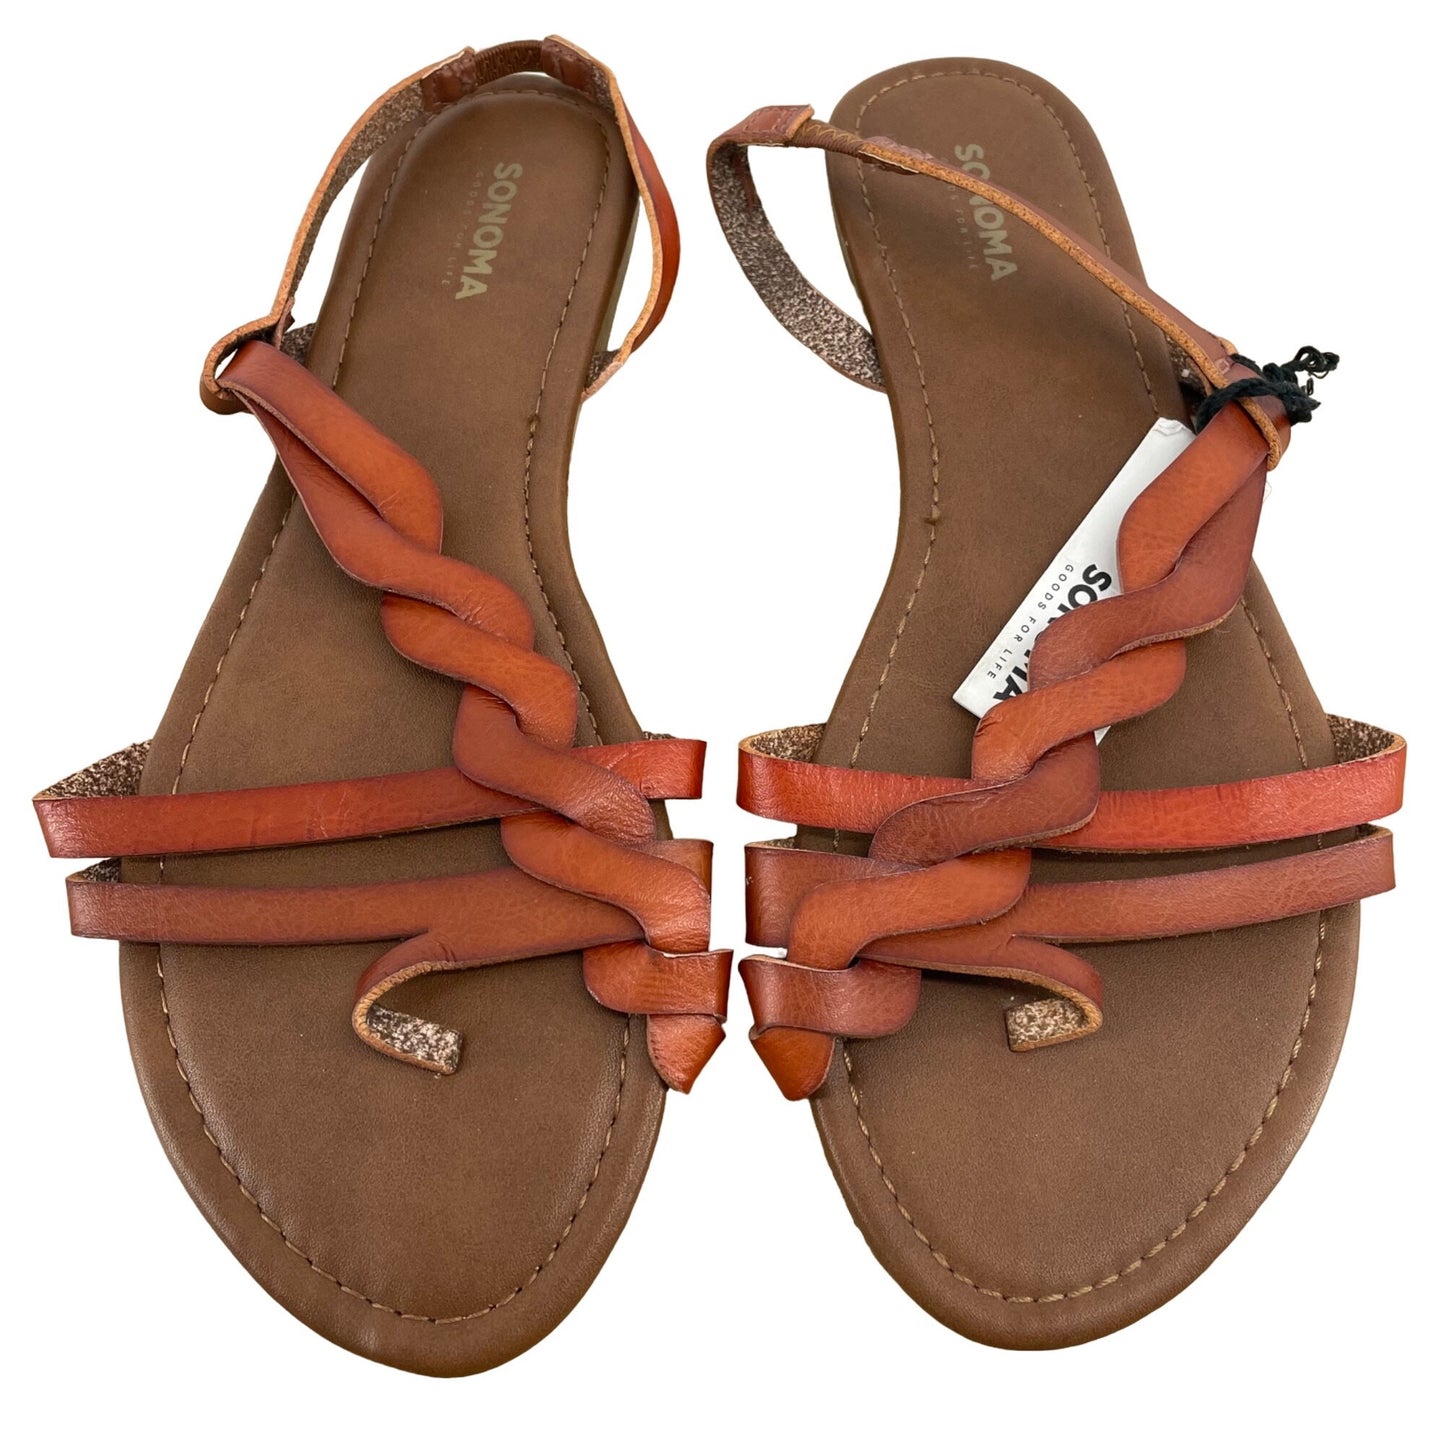 NWT Sonoma Women's Size L 9/10 Faux Leather Cognac Sandals